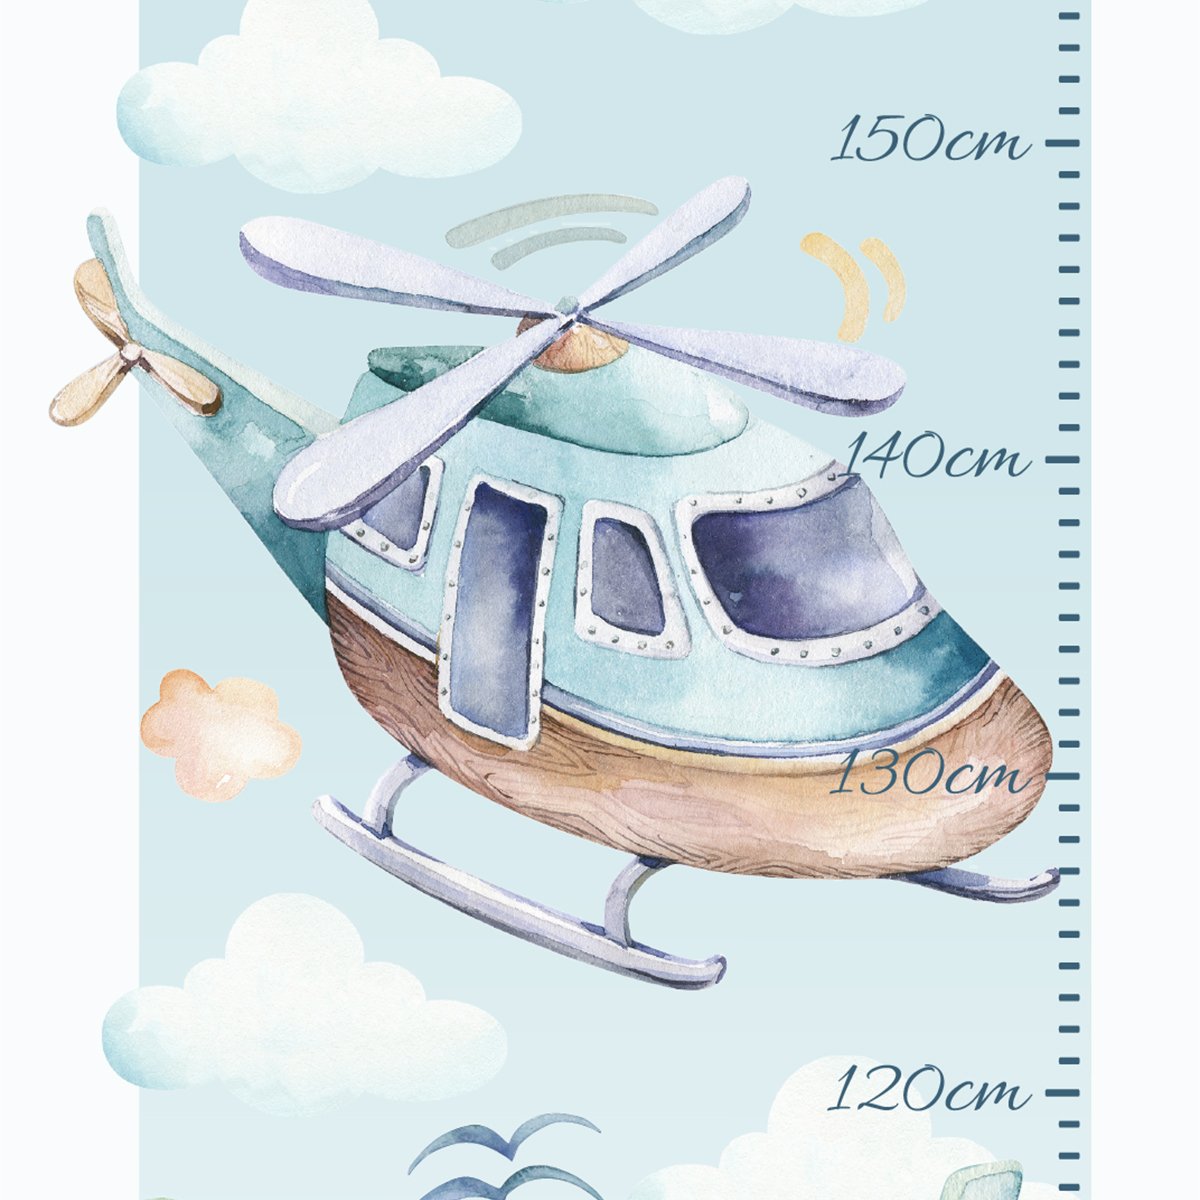 Naklejka ścienna miarka wzrostu - latające samoloty i helikopter